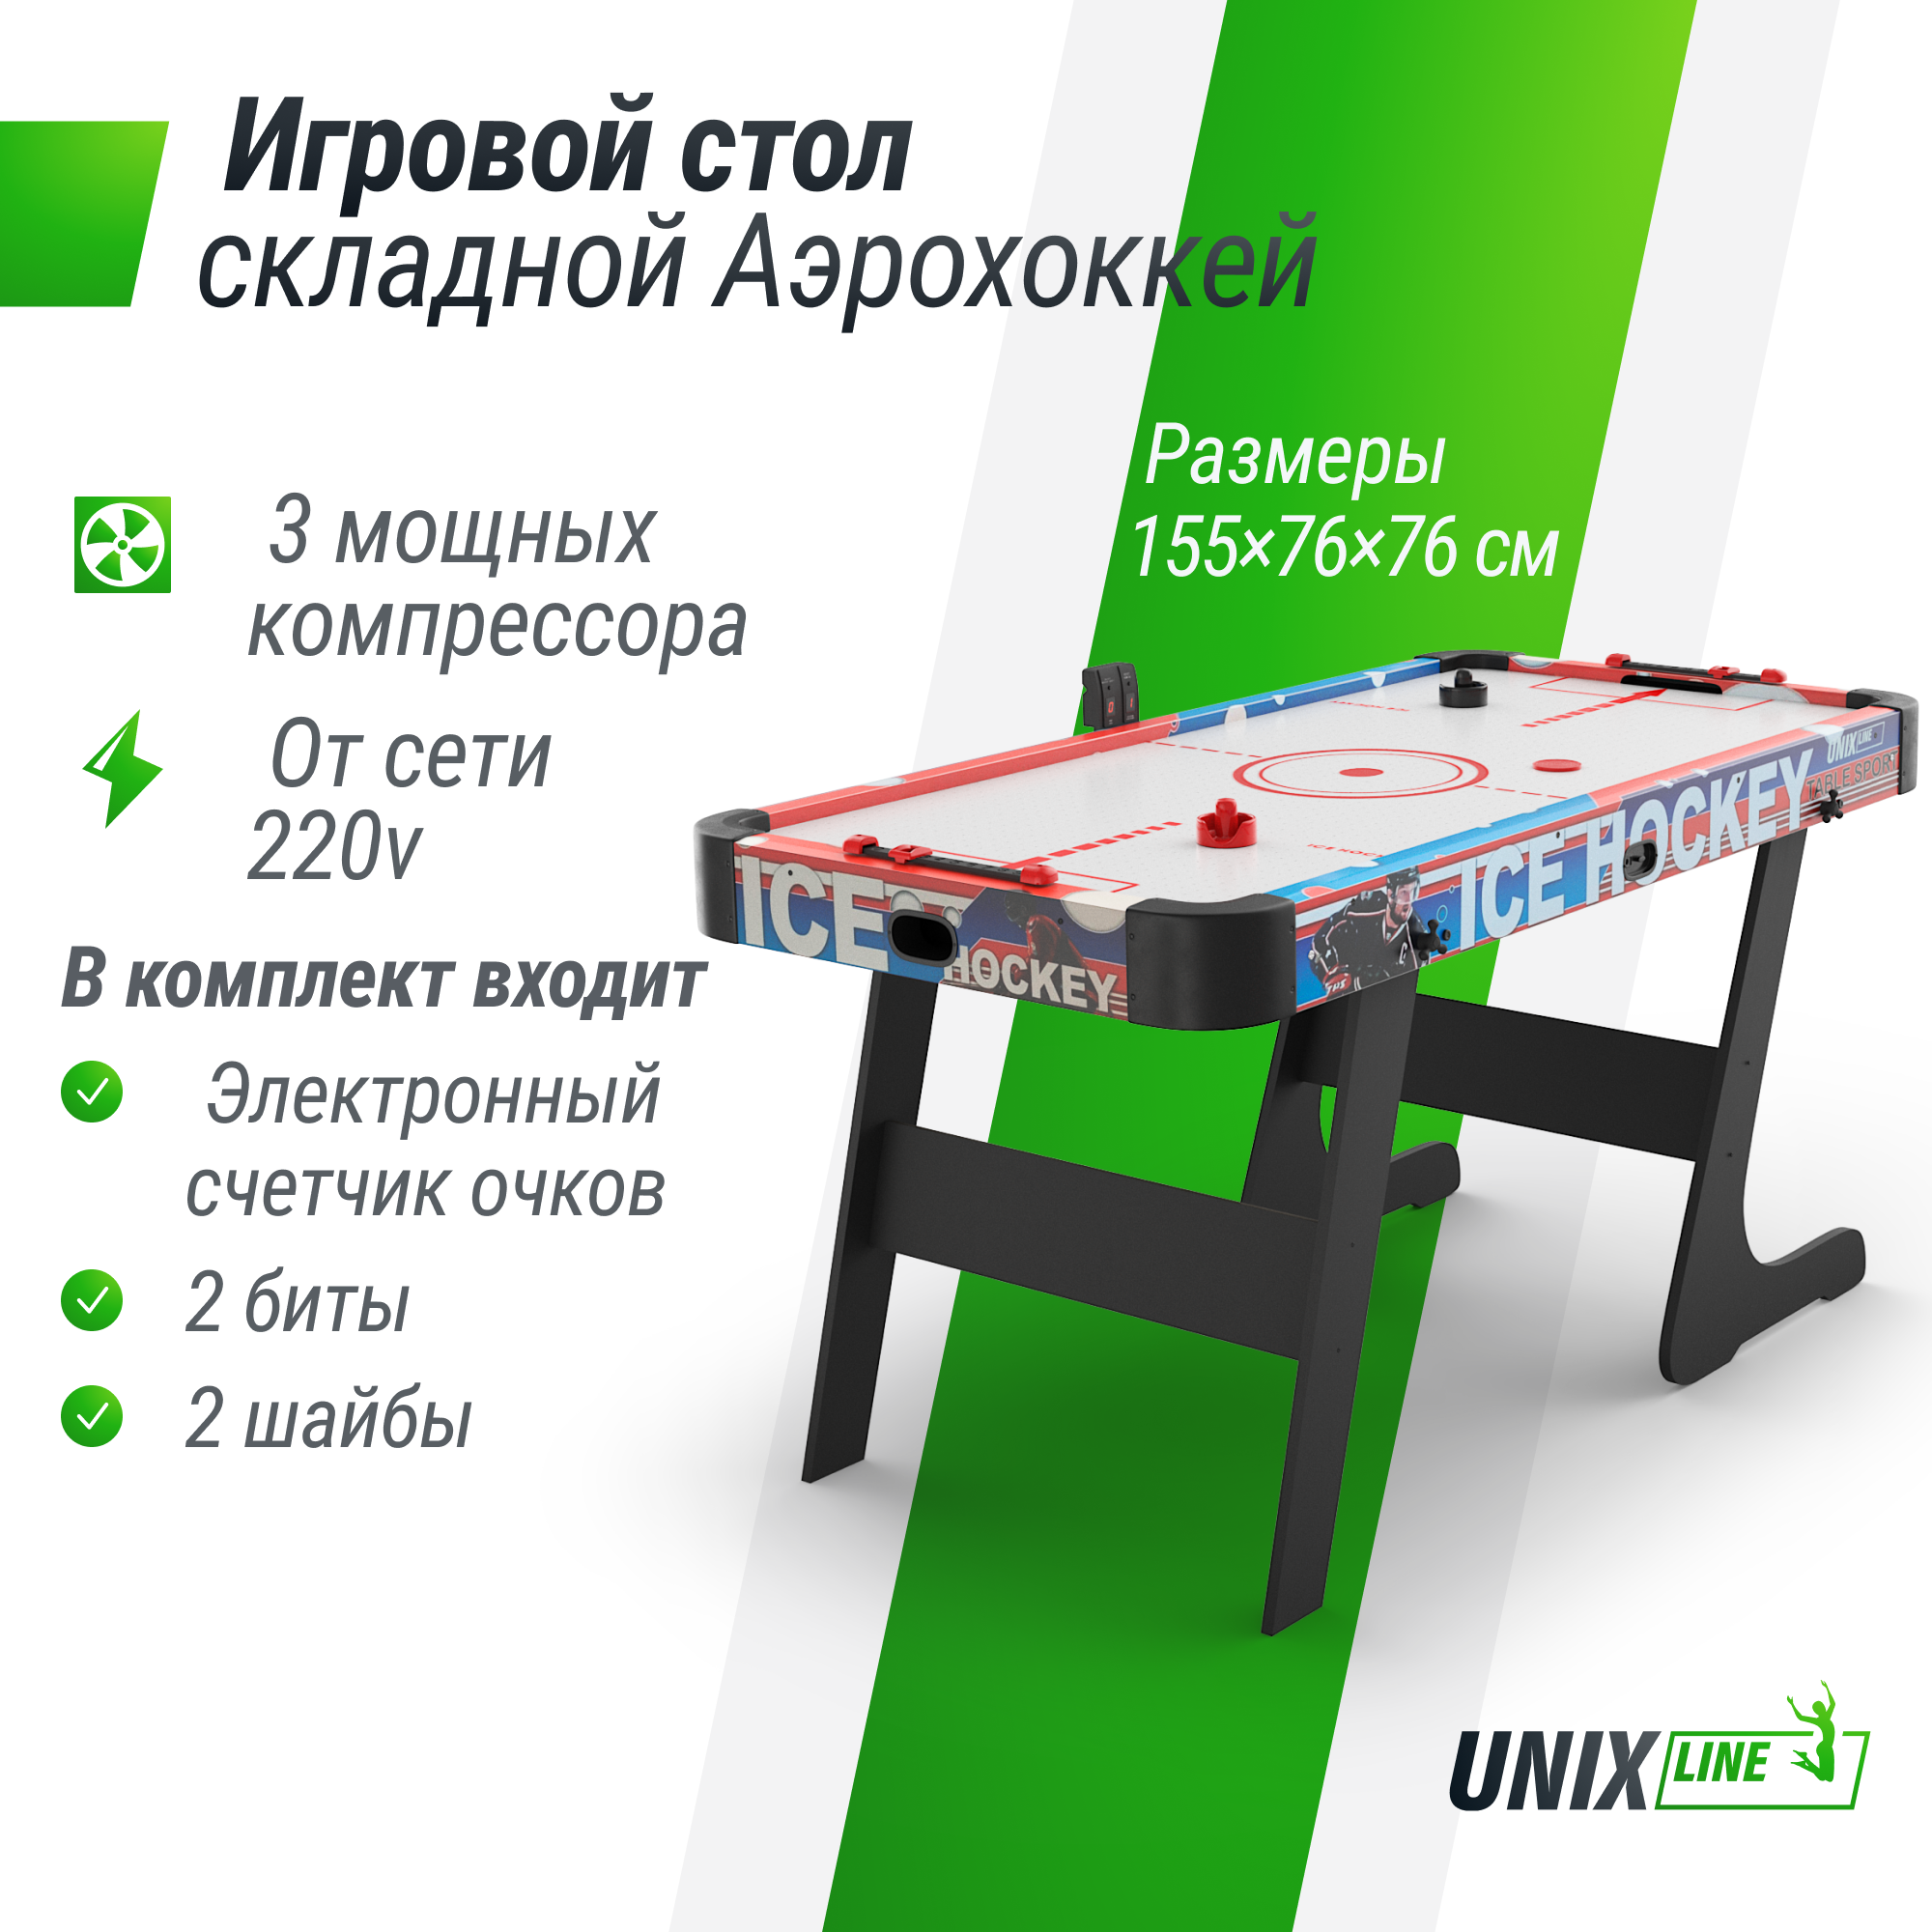 Игровой стол UNIX Line Аэрохоккей 155х76 cм, складной большой аэро хоккей от сети 220В теннисный стол start line olympic c сеткой